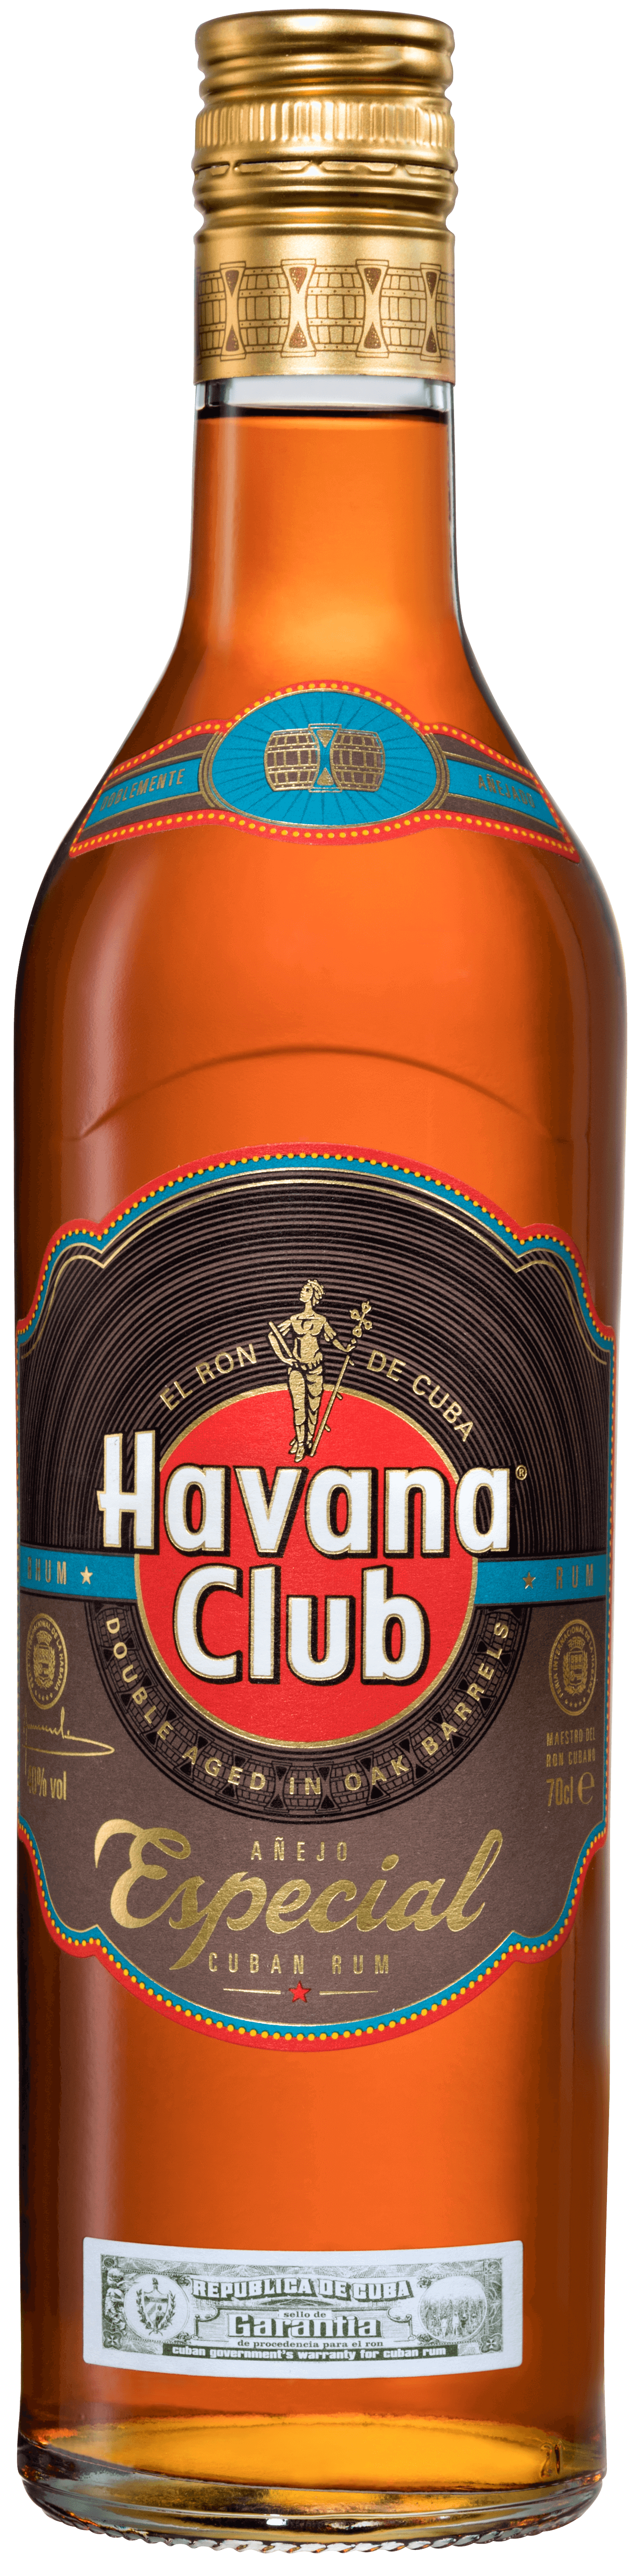 Ron dorado Havana Club Especial | Havana Club